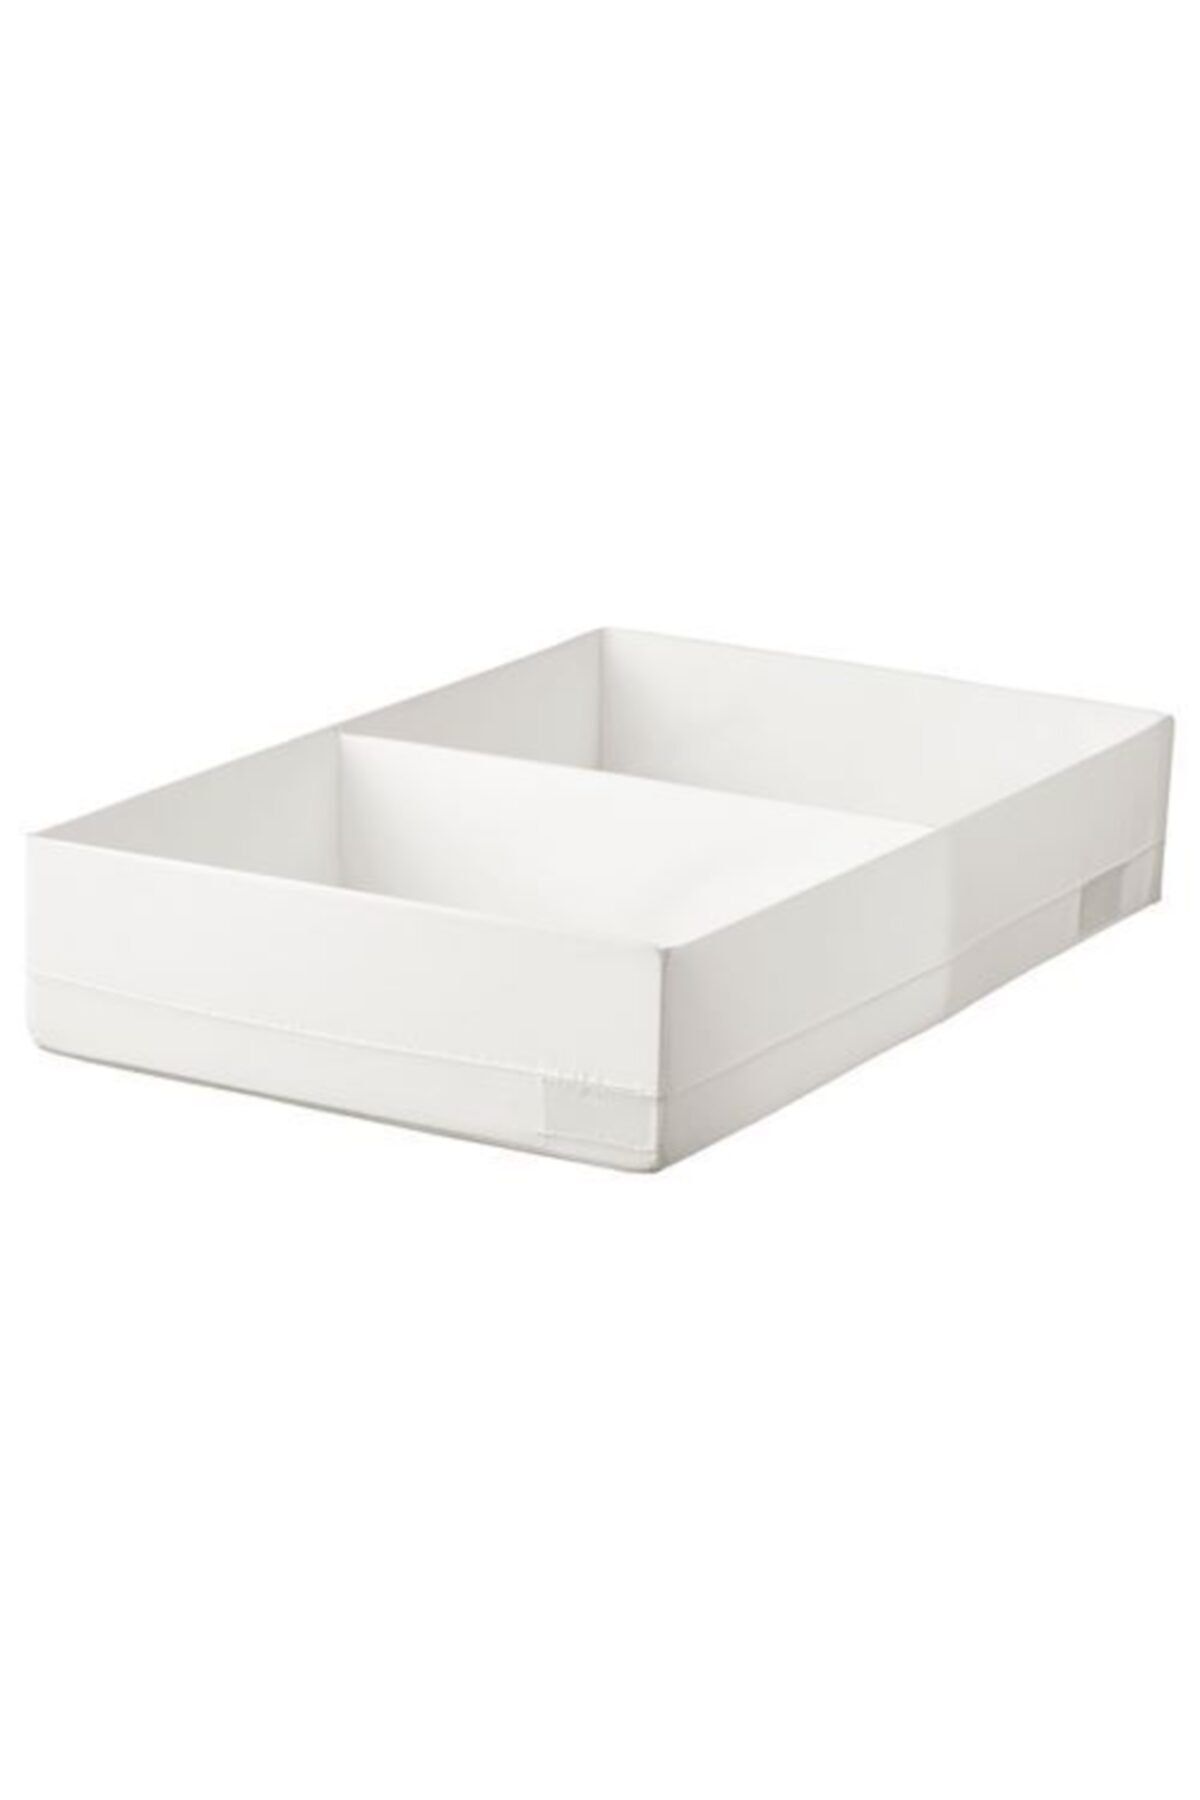 IKEA Stuk Dolap Içi Düzenleyici Bölmeli Kutu, Beyaz ( 34x51x10 Cm )